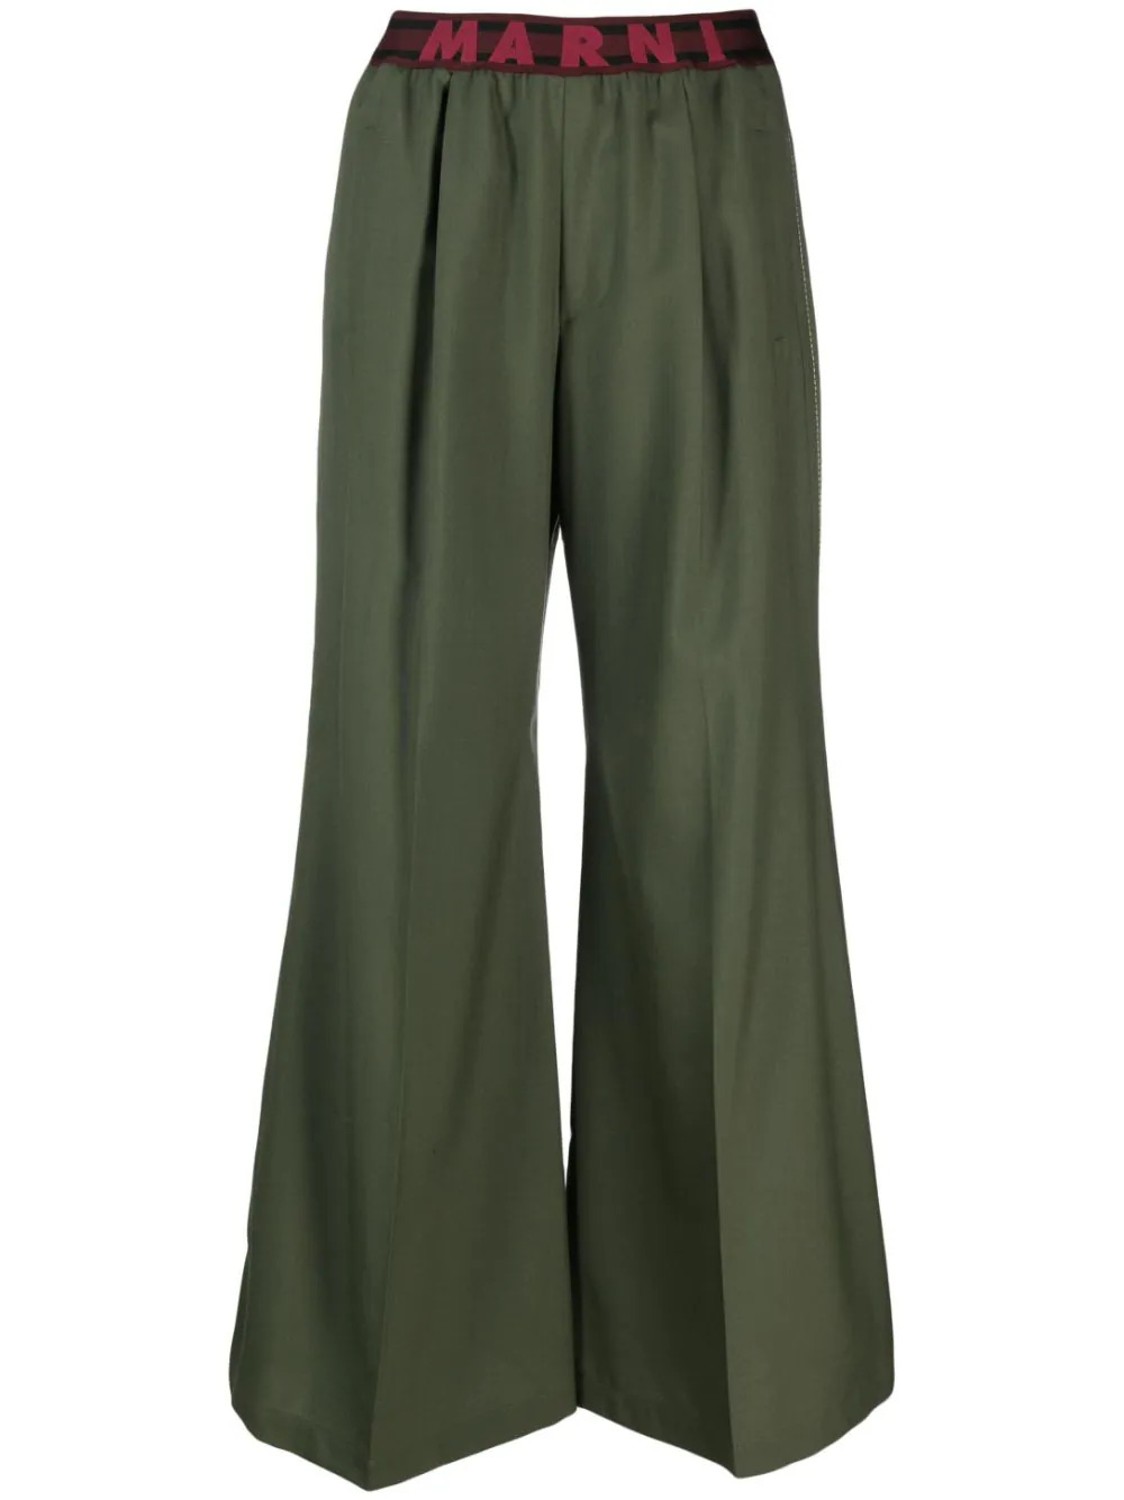 shop Marni  Pantaloni: Pantaloni Marni, modello svasato infondo, elastico in vita con logo, tasche laterali.

Composizione: 100% lana vergine. number 2617